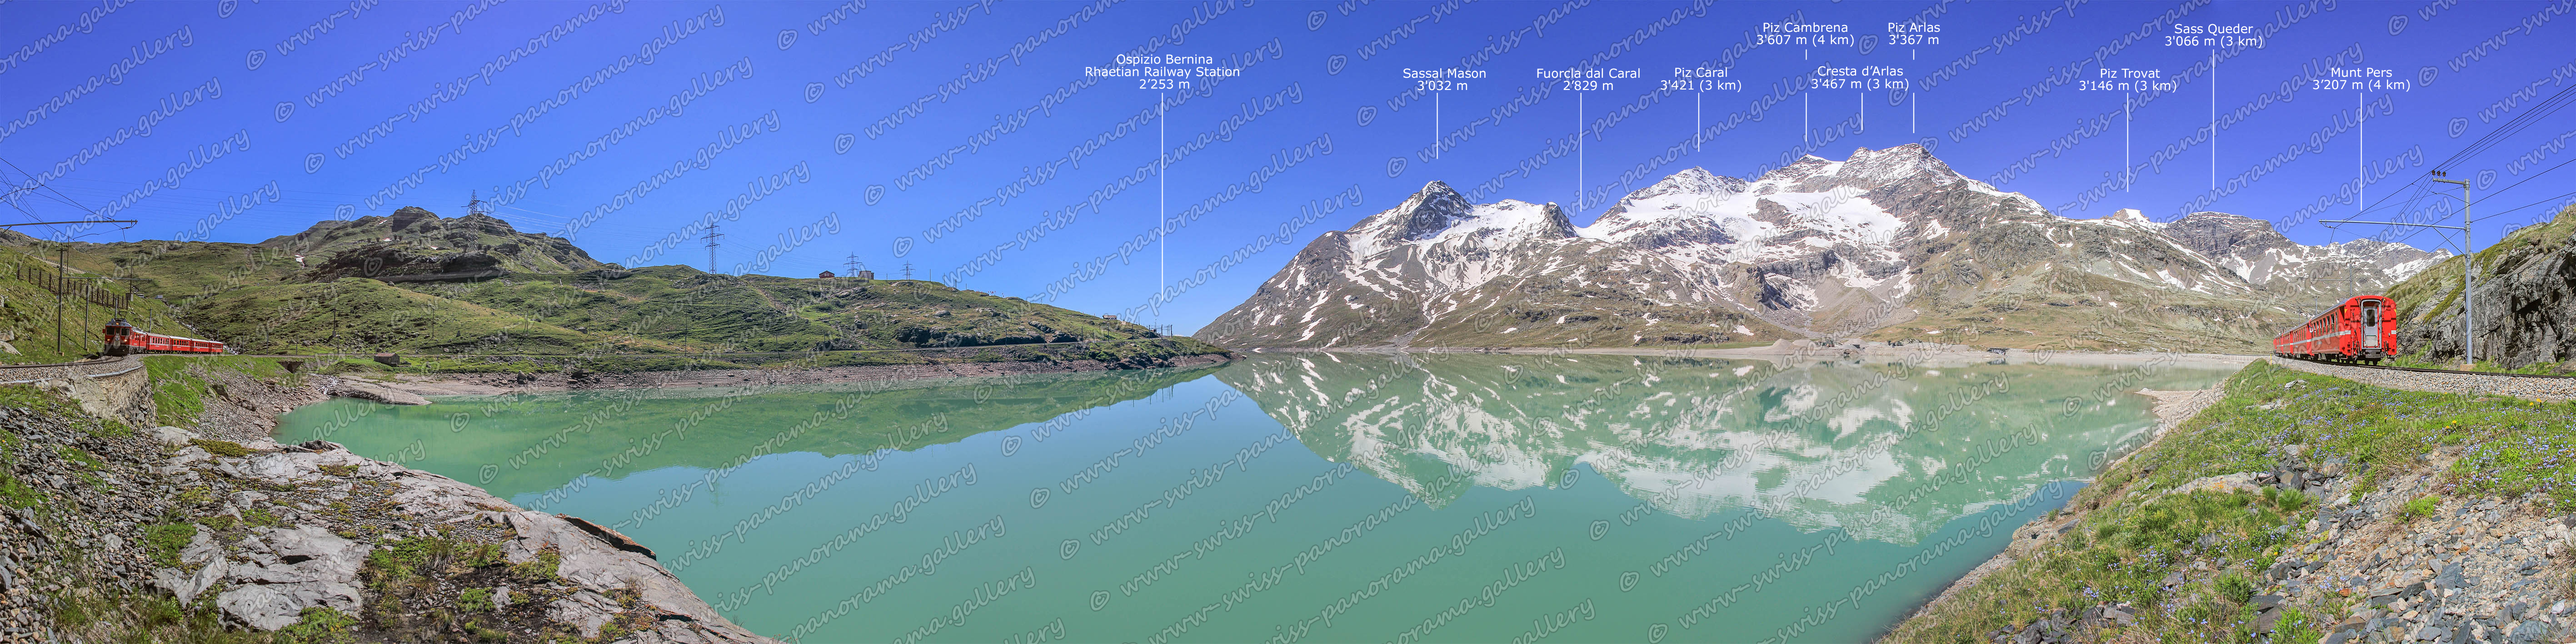 Bernina Pass panorama